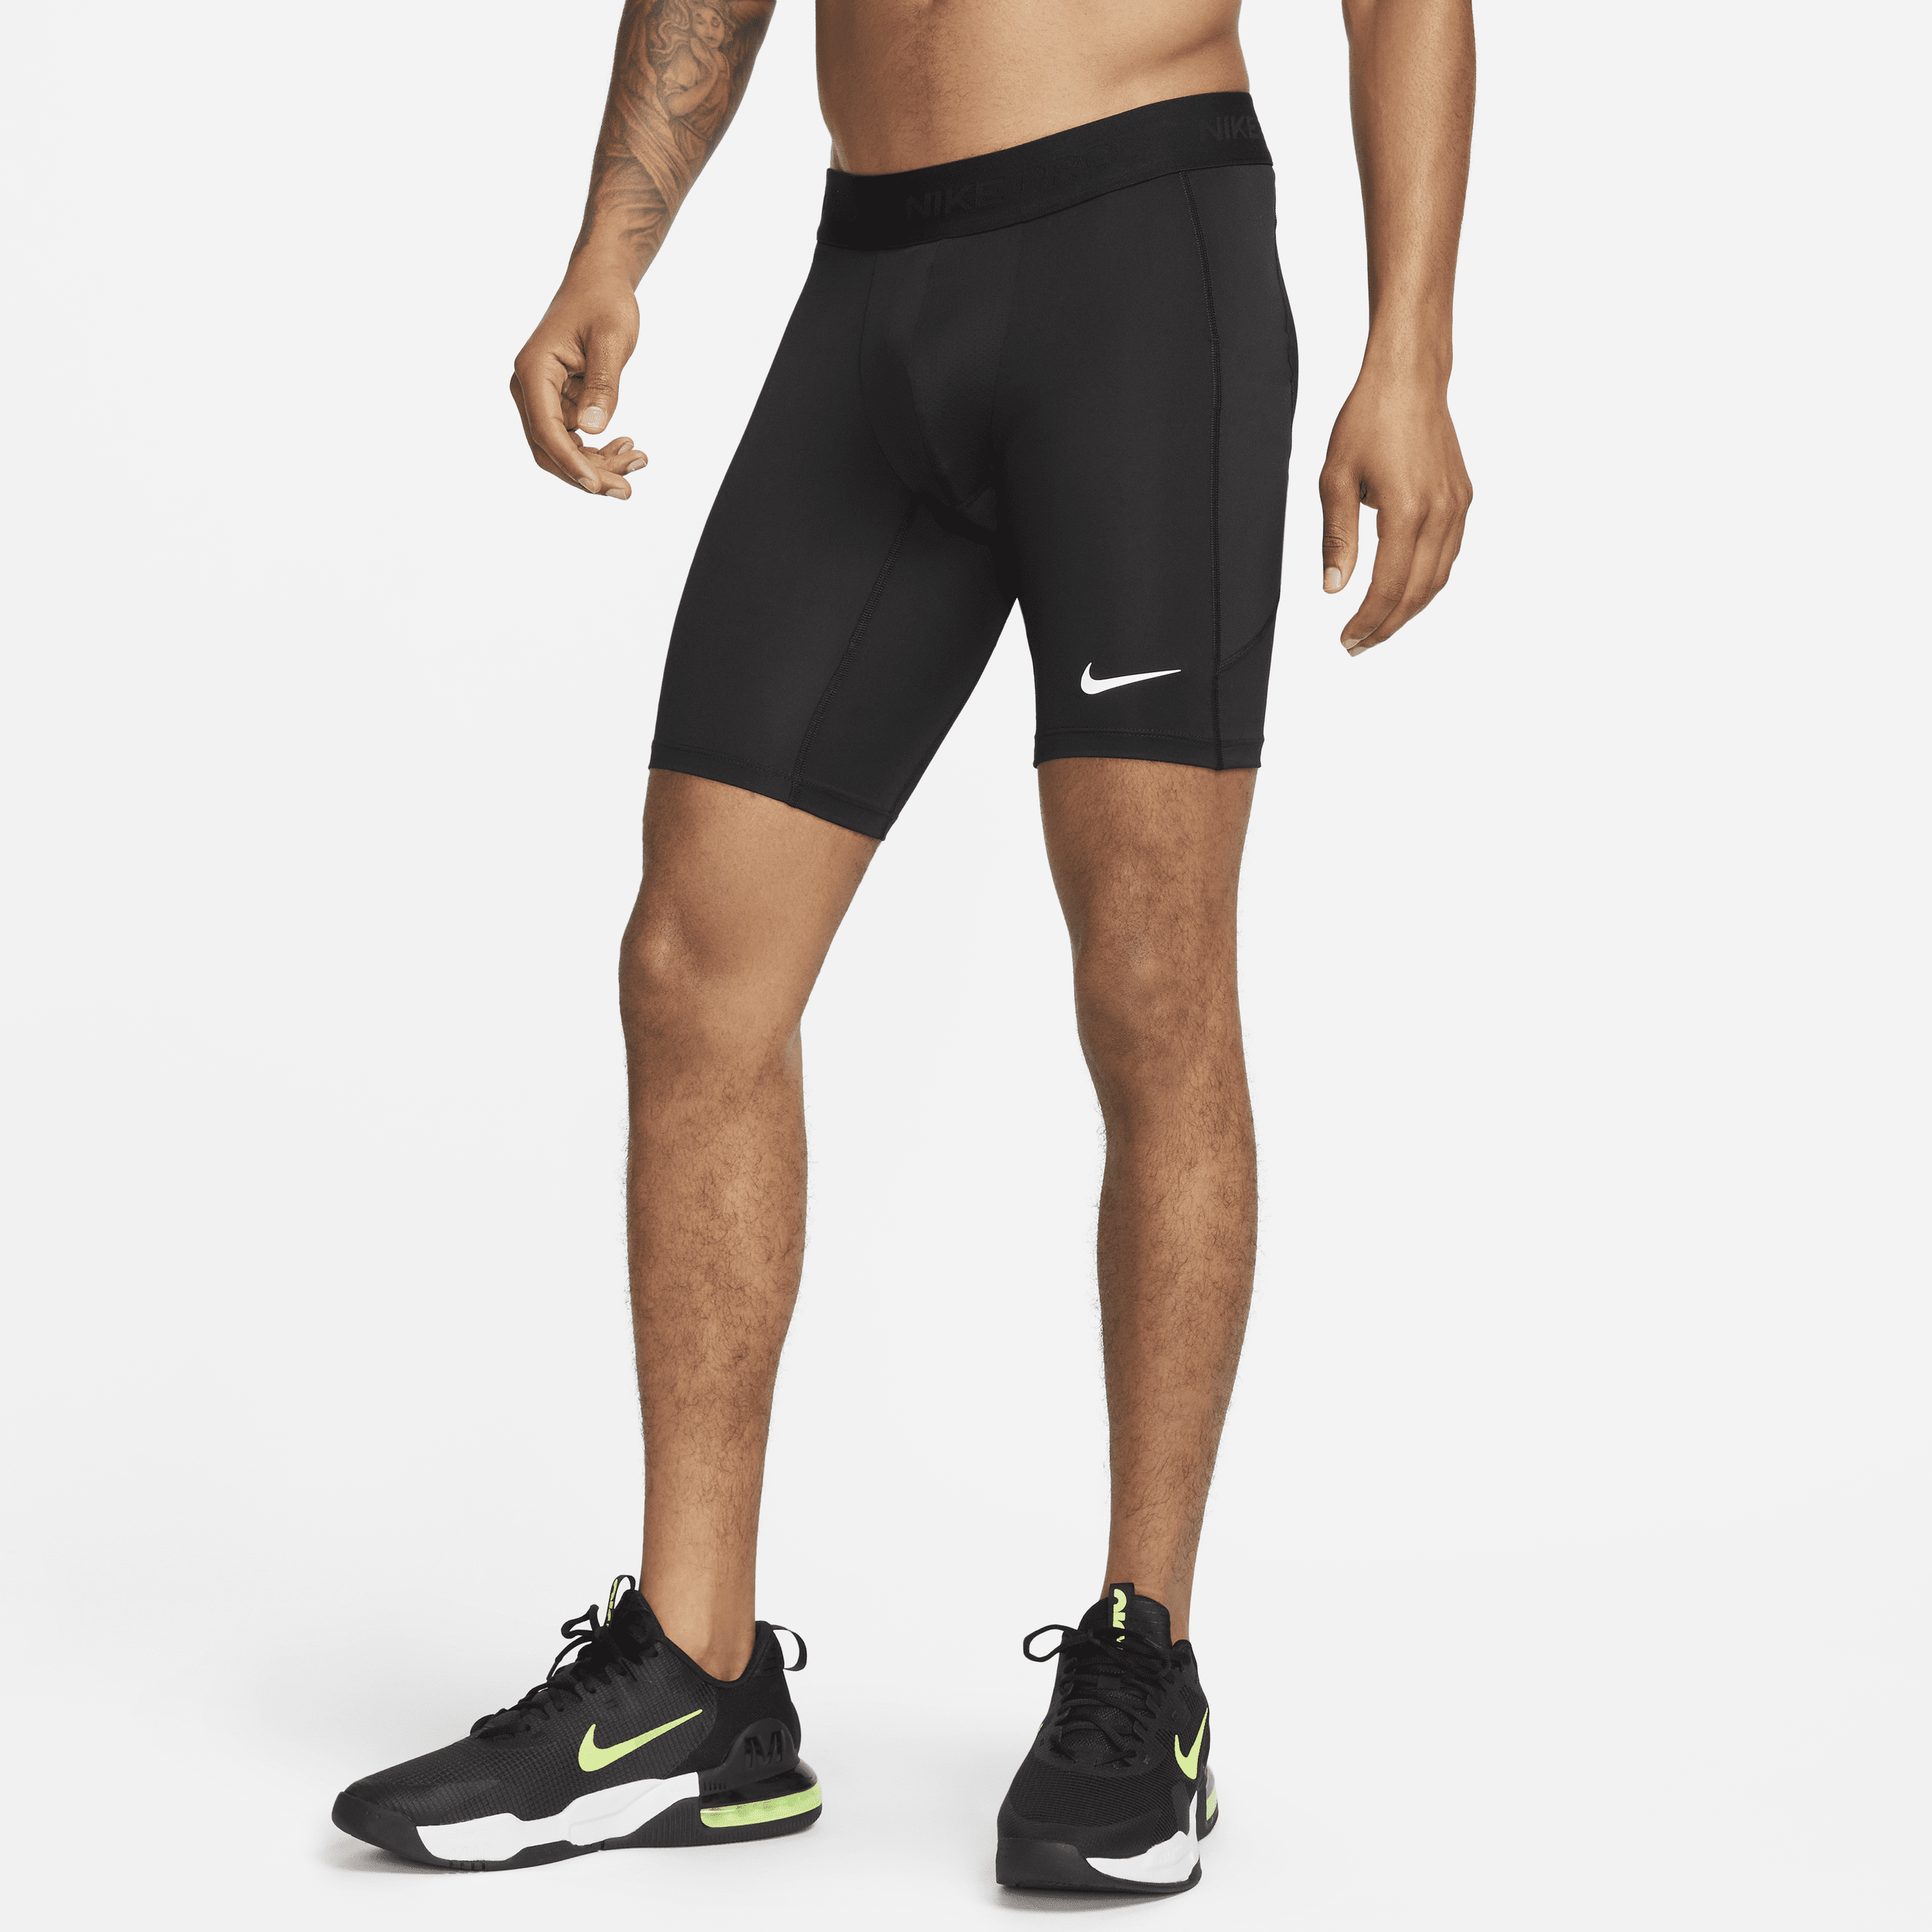 Shorts lunghi da fitness Dri-FIT Nike Pro – Uomo - Nero